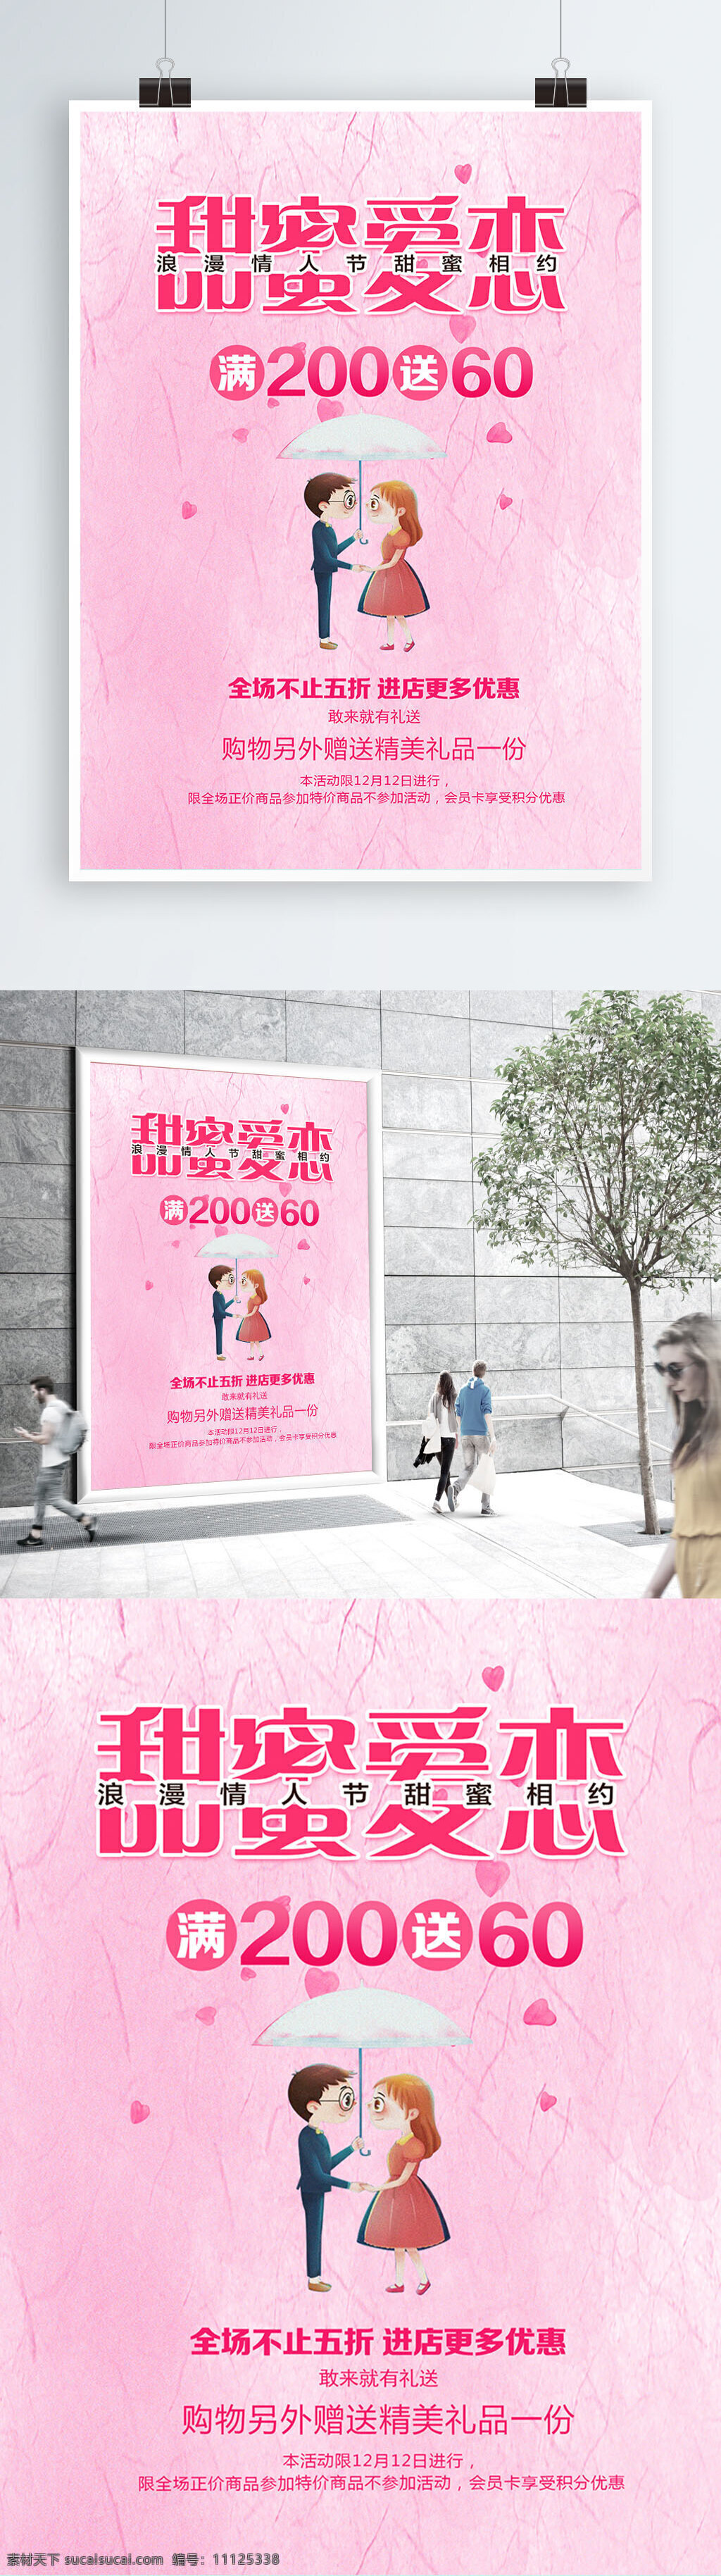 甜蜜 爱恋 情人节 节日 海报 创意 粉色 节日海报 浪漫 宣传海报